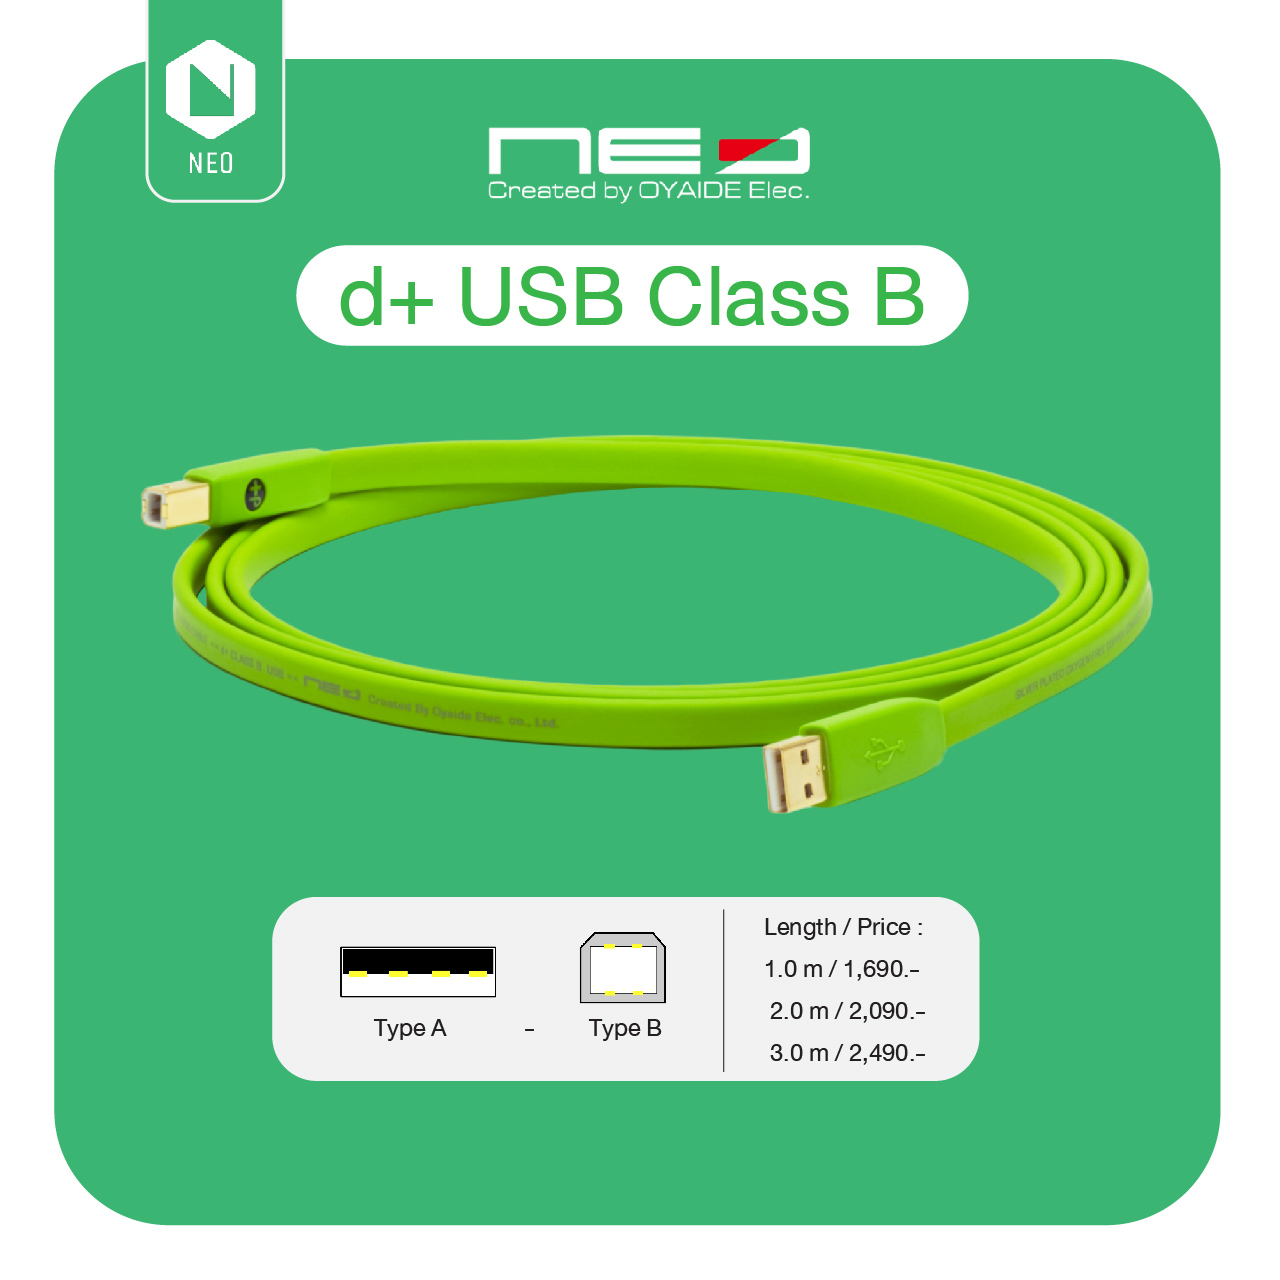 NEO™ (Created by OYAIDE Elec.) d+ USB Class B (USB : A - B) : สายสัญญาณเสียงดิจิตอลคุณภาพสูงสำหรับงานระดับอาชีพ